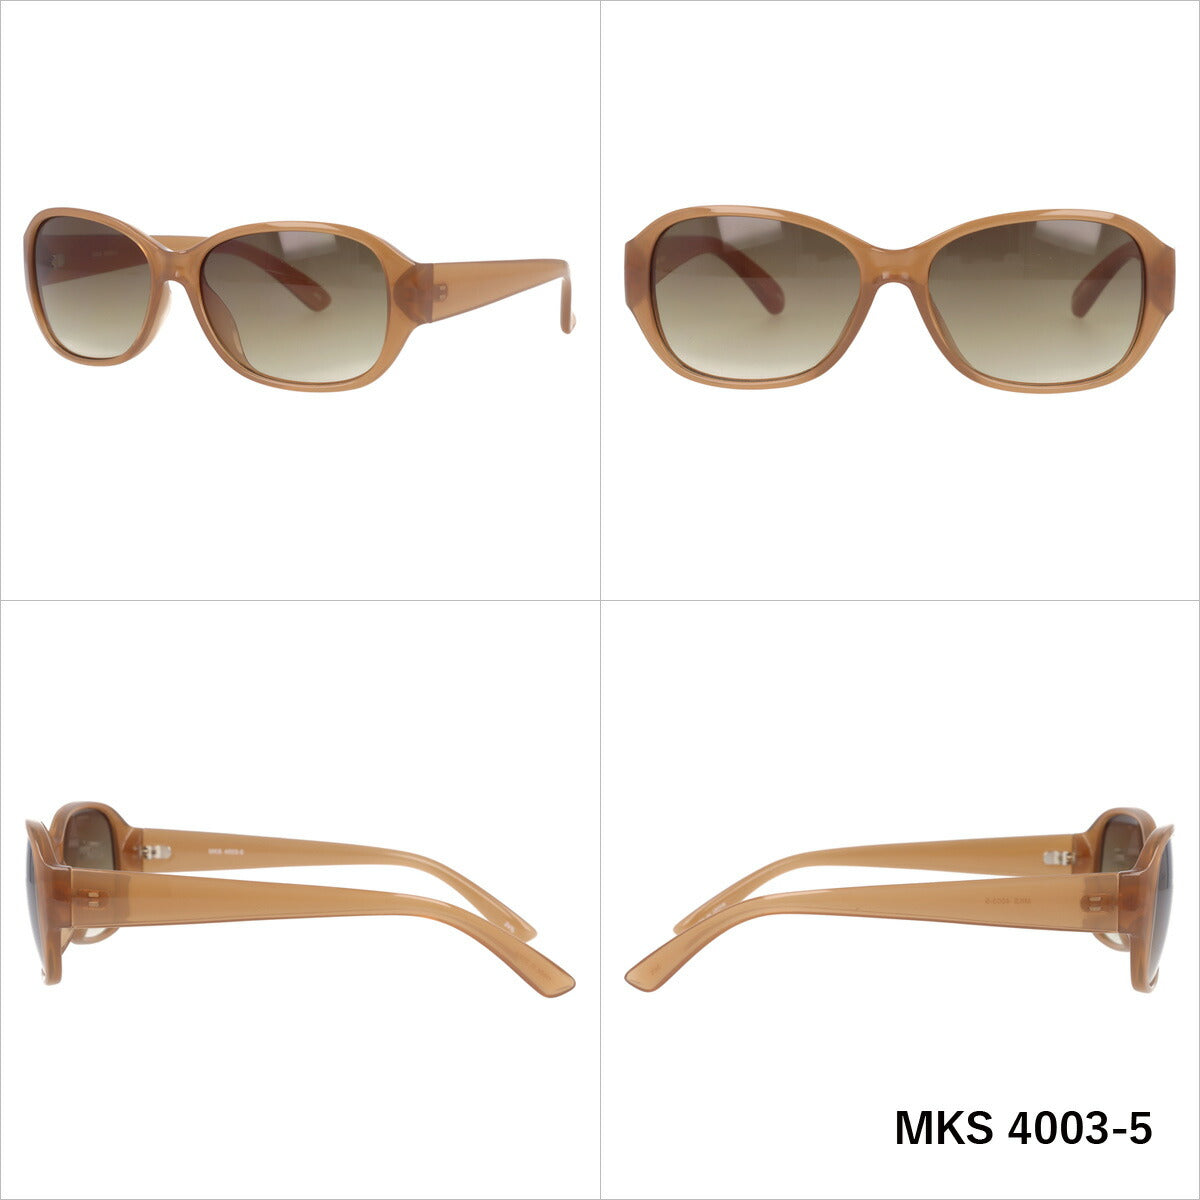 マシューキョウト サングラス アジアンフィット mashu KYOTO MKS 4003 全4カラー 56サイズ バタフライ型 ユニセックス メンズ レディース UVカット 紫外線 カラーサングラス ブランド 人気 定番 ラッピング無料